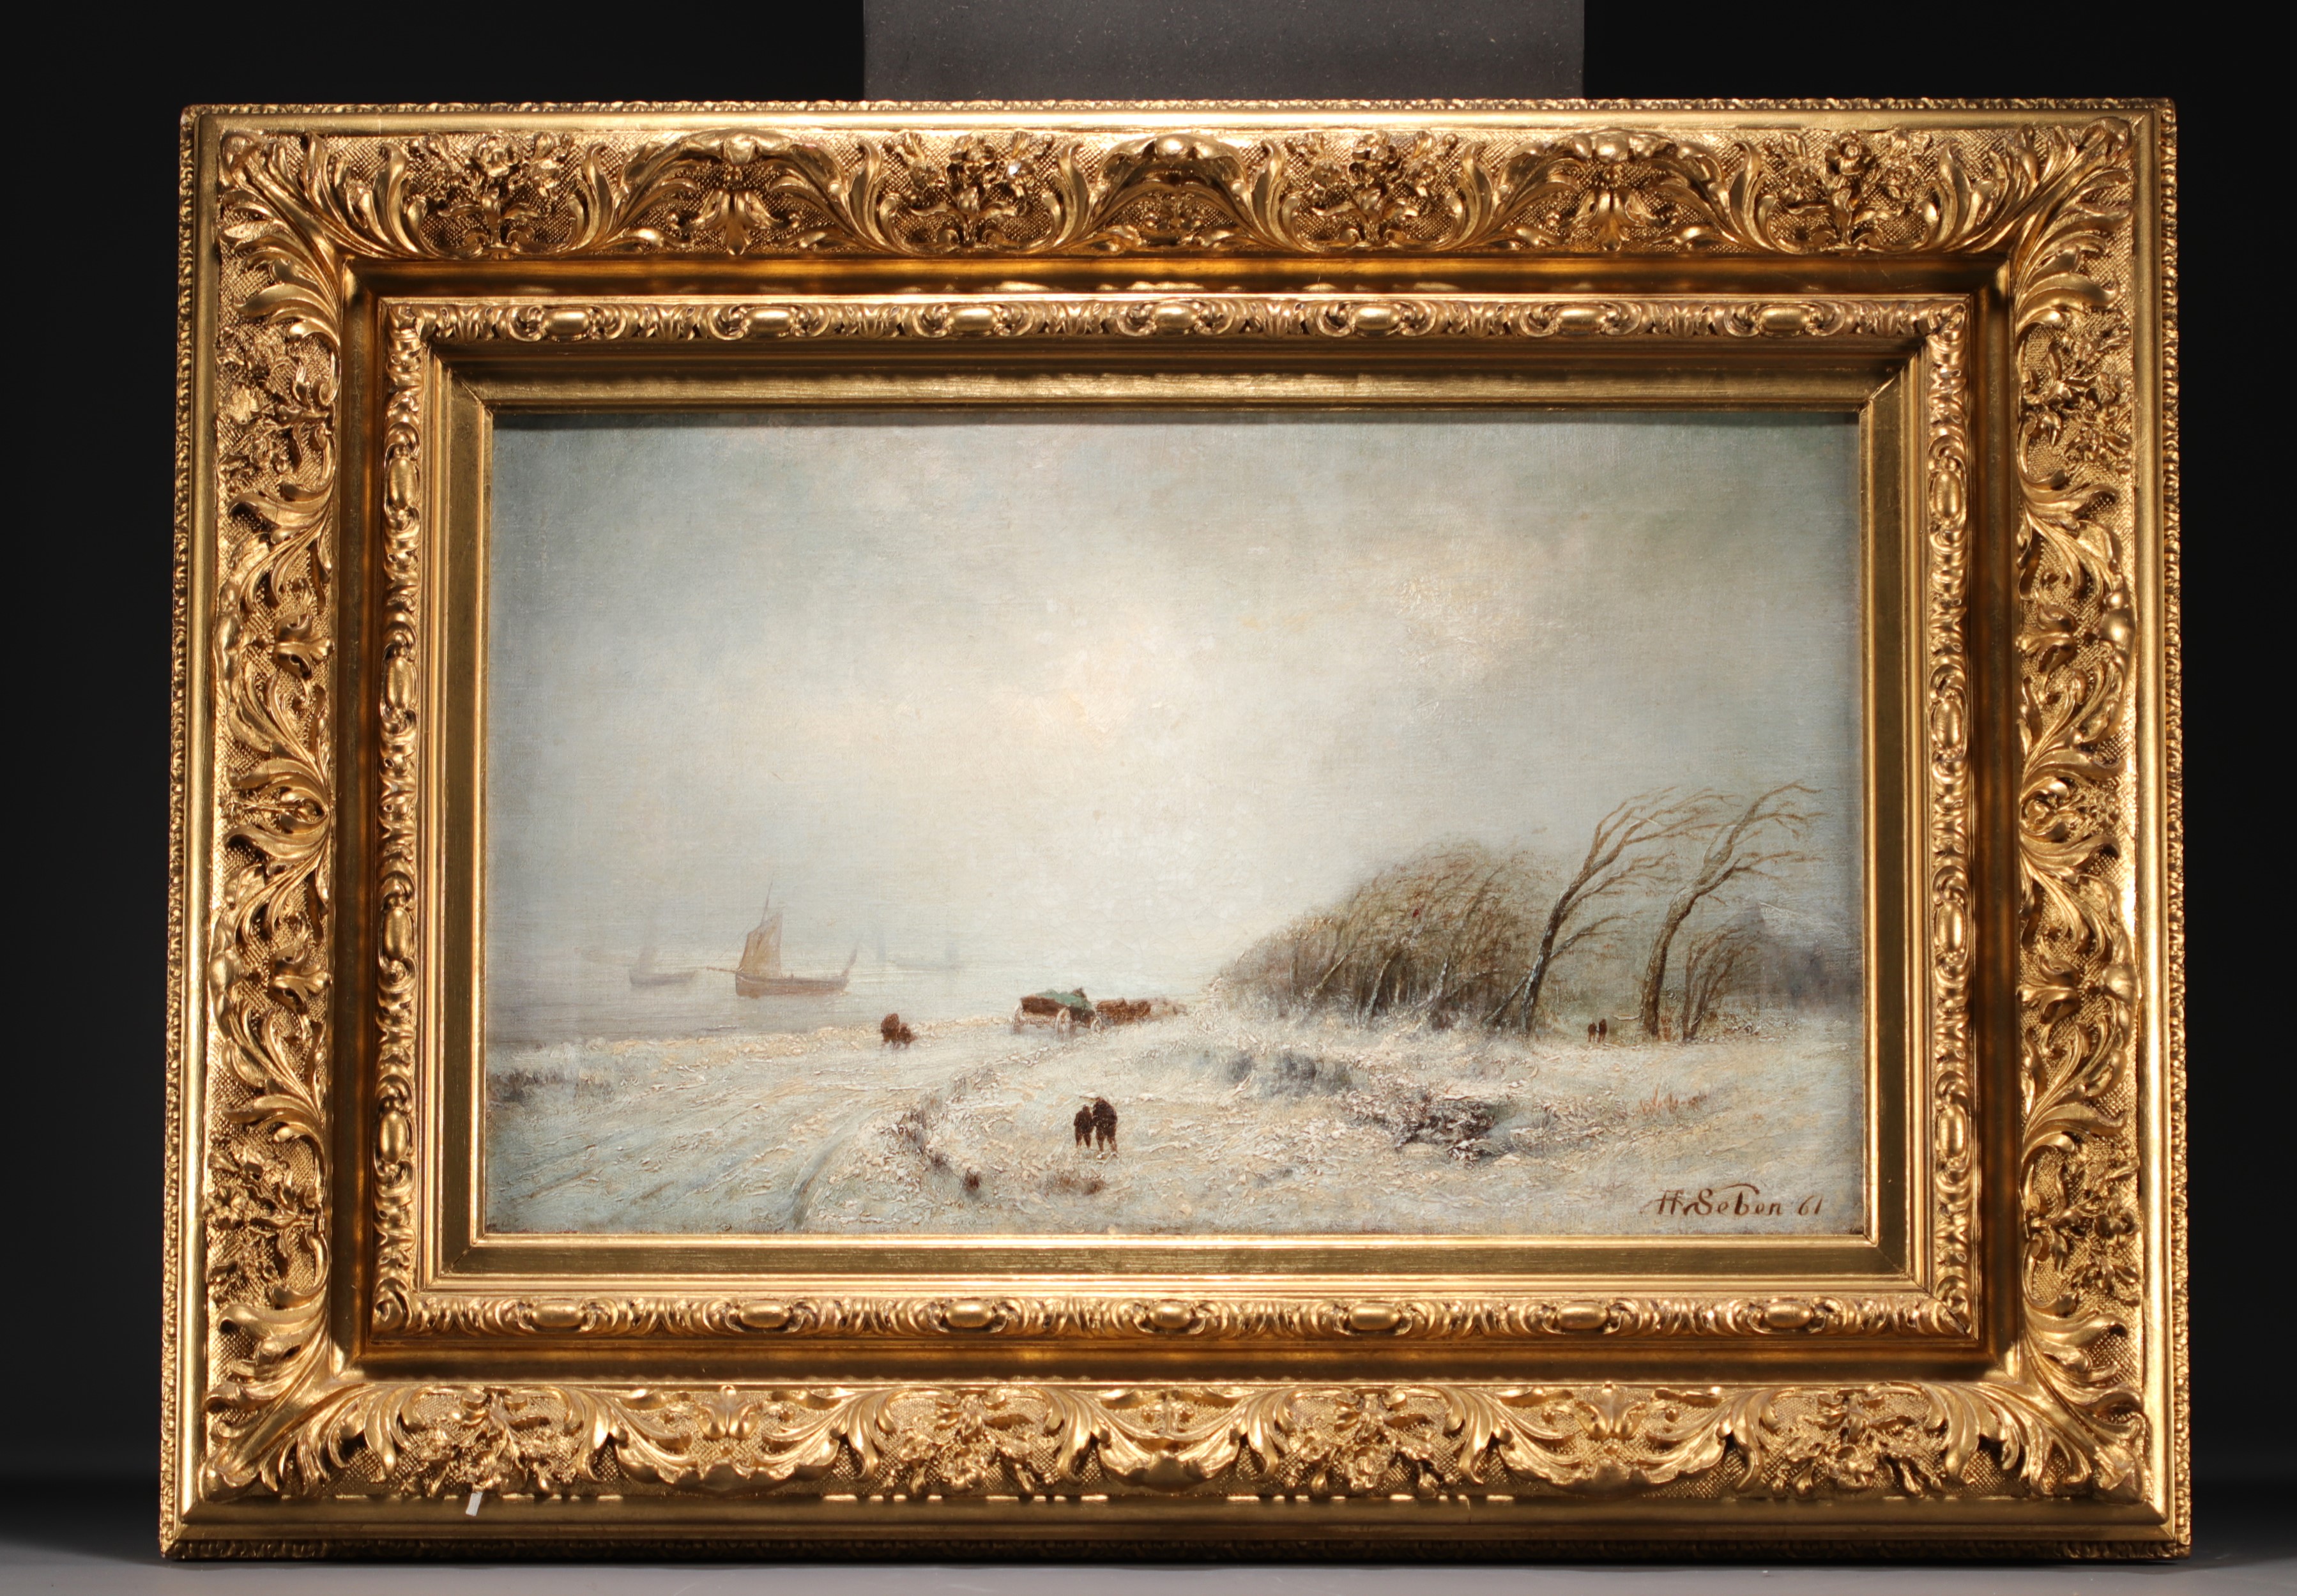 Henri VAN SEBEN (1825-1913) "Storm in Winter" Oil on canvas - Image 2 of 2